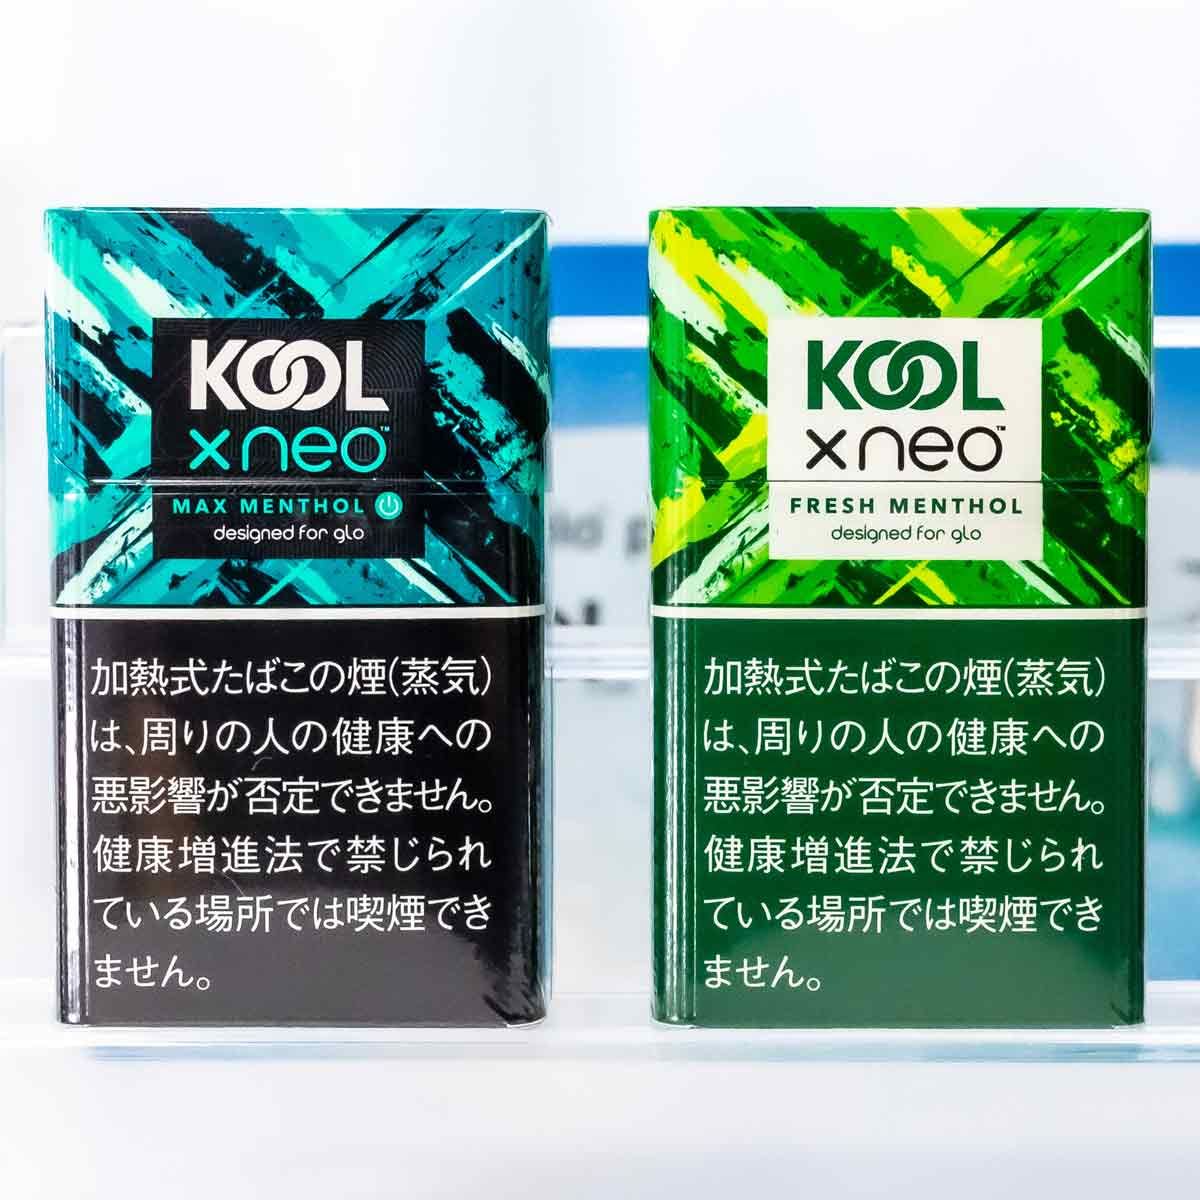 人気メンソール銘柄「KOOL」が加熱式タバコ「グロー」についに登場 ...